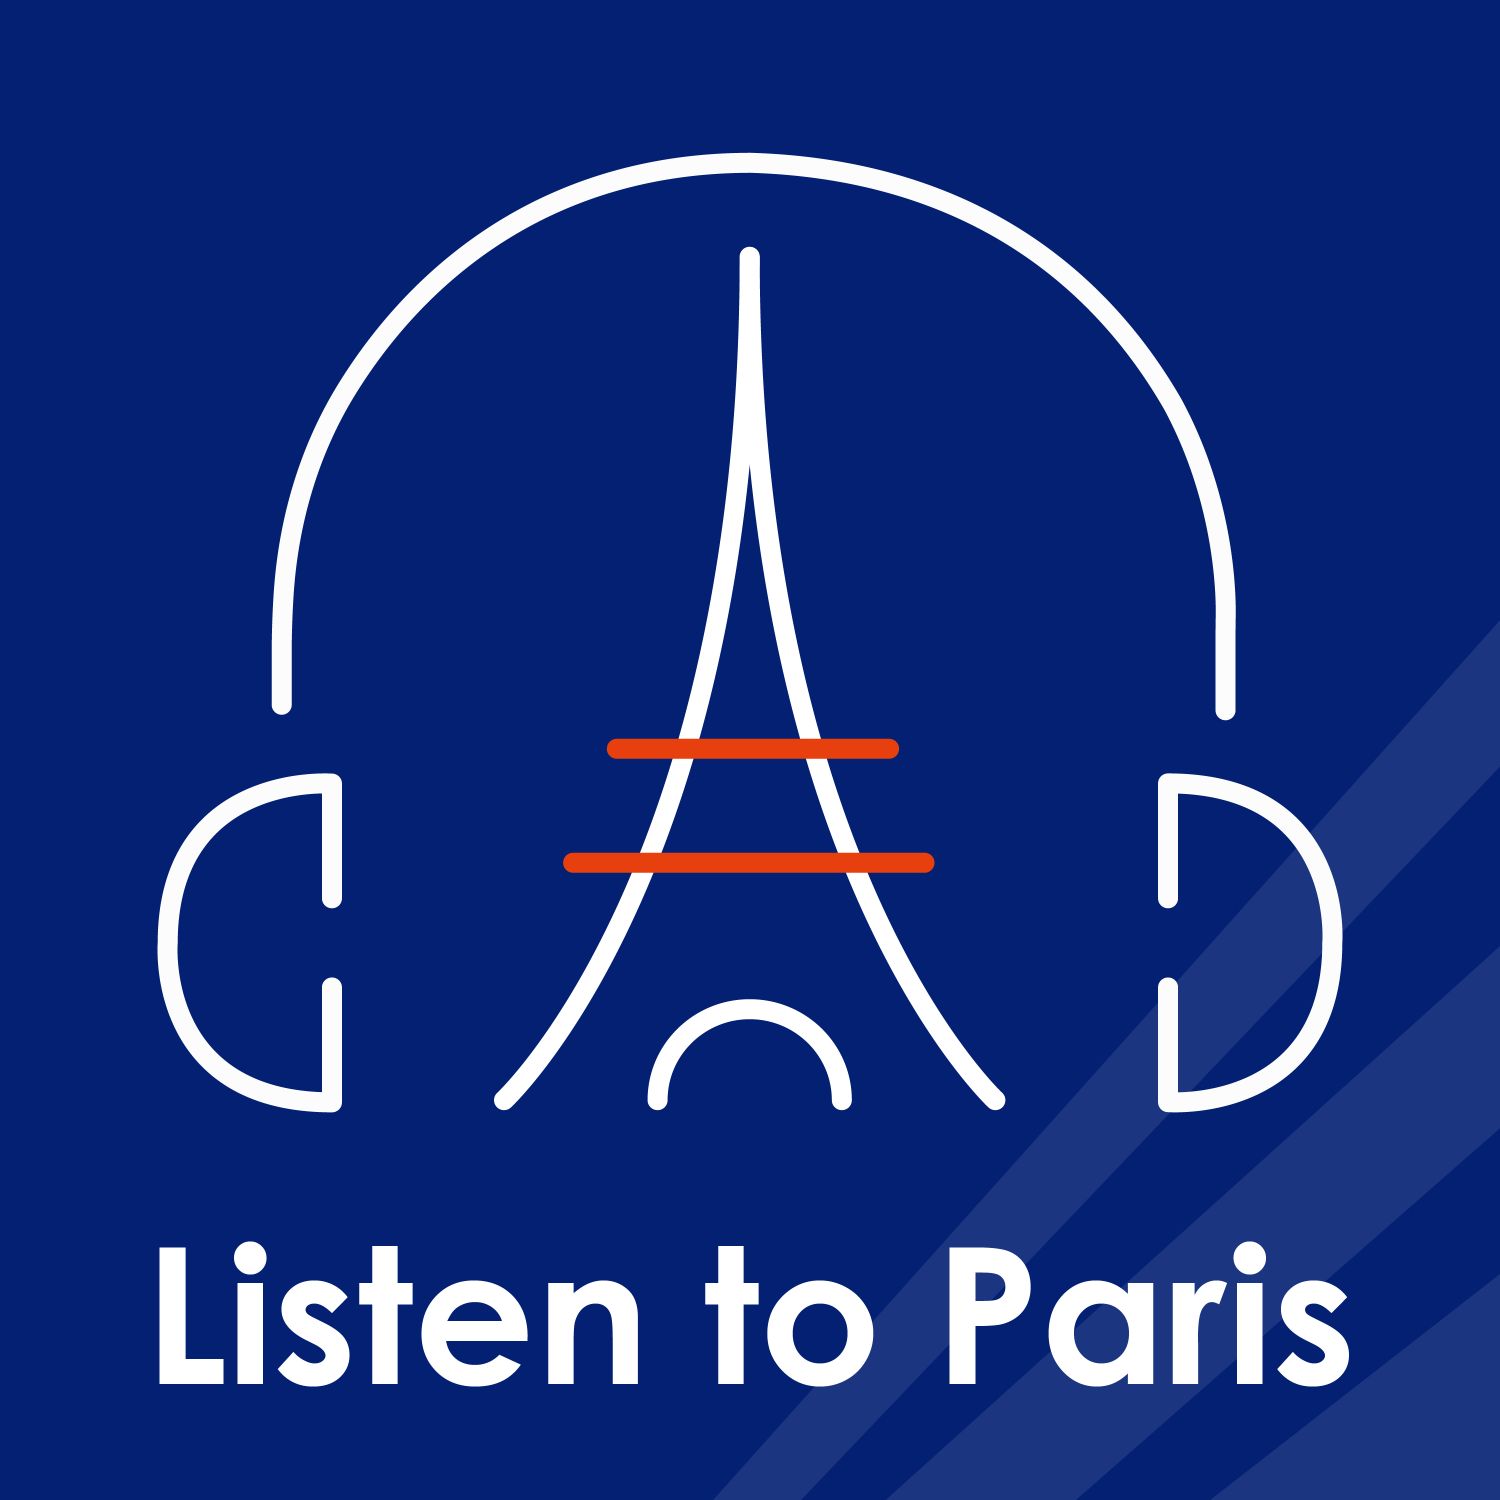 Listen to Paris